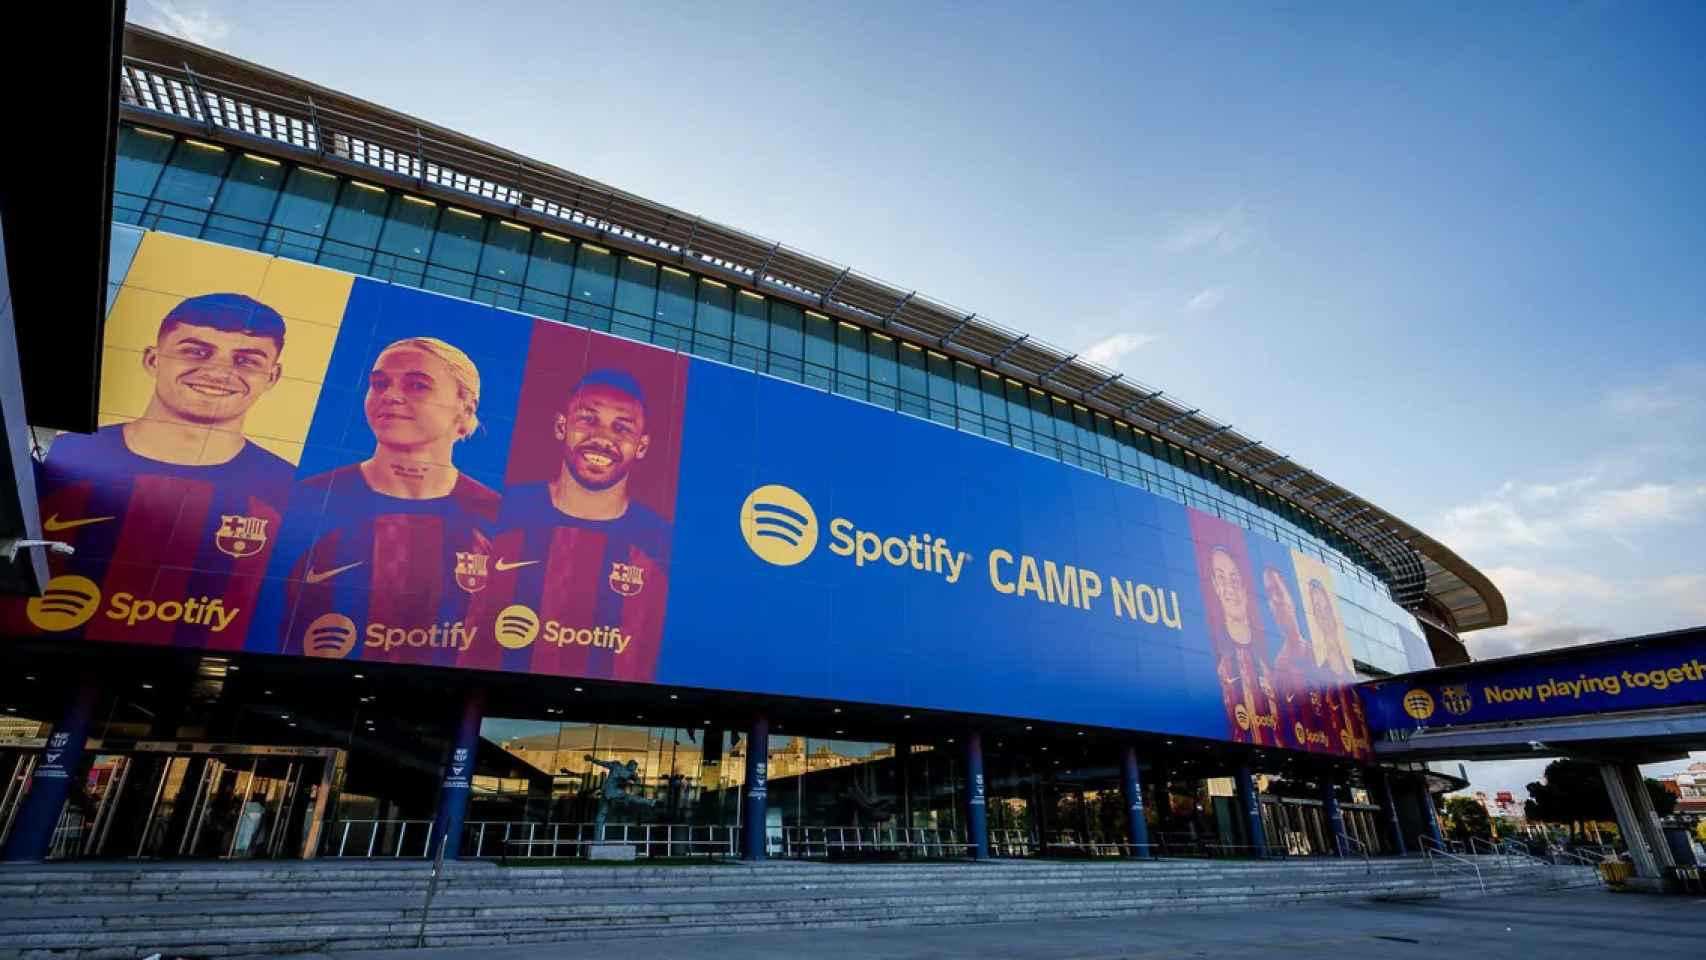 La fachada exterior del Camp Nou con la imagen de Spotify, el nuevo patrocinador del Barça / FCB